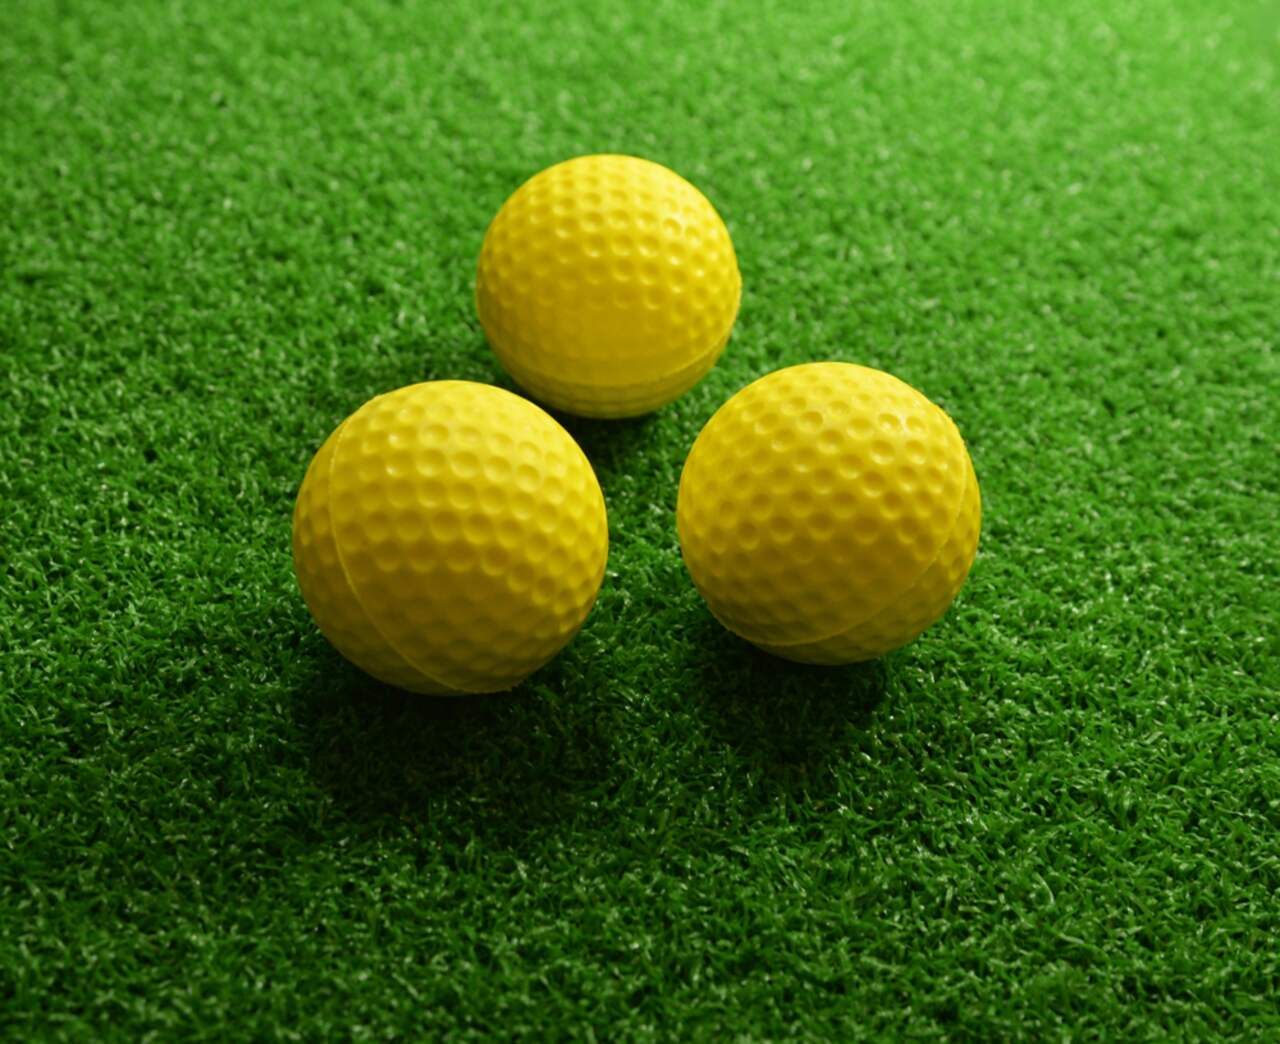 Balles de golf d'entraînement PrideSports en mousse souple, avec fossettes,  pour l'intérieur et l'extérieur, paq. 12, jaune